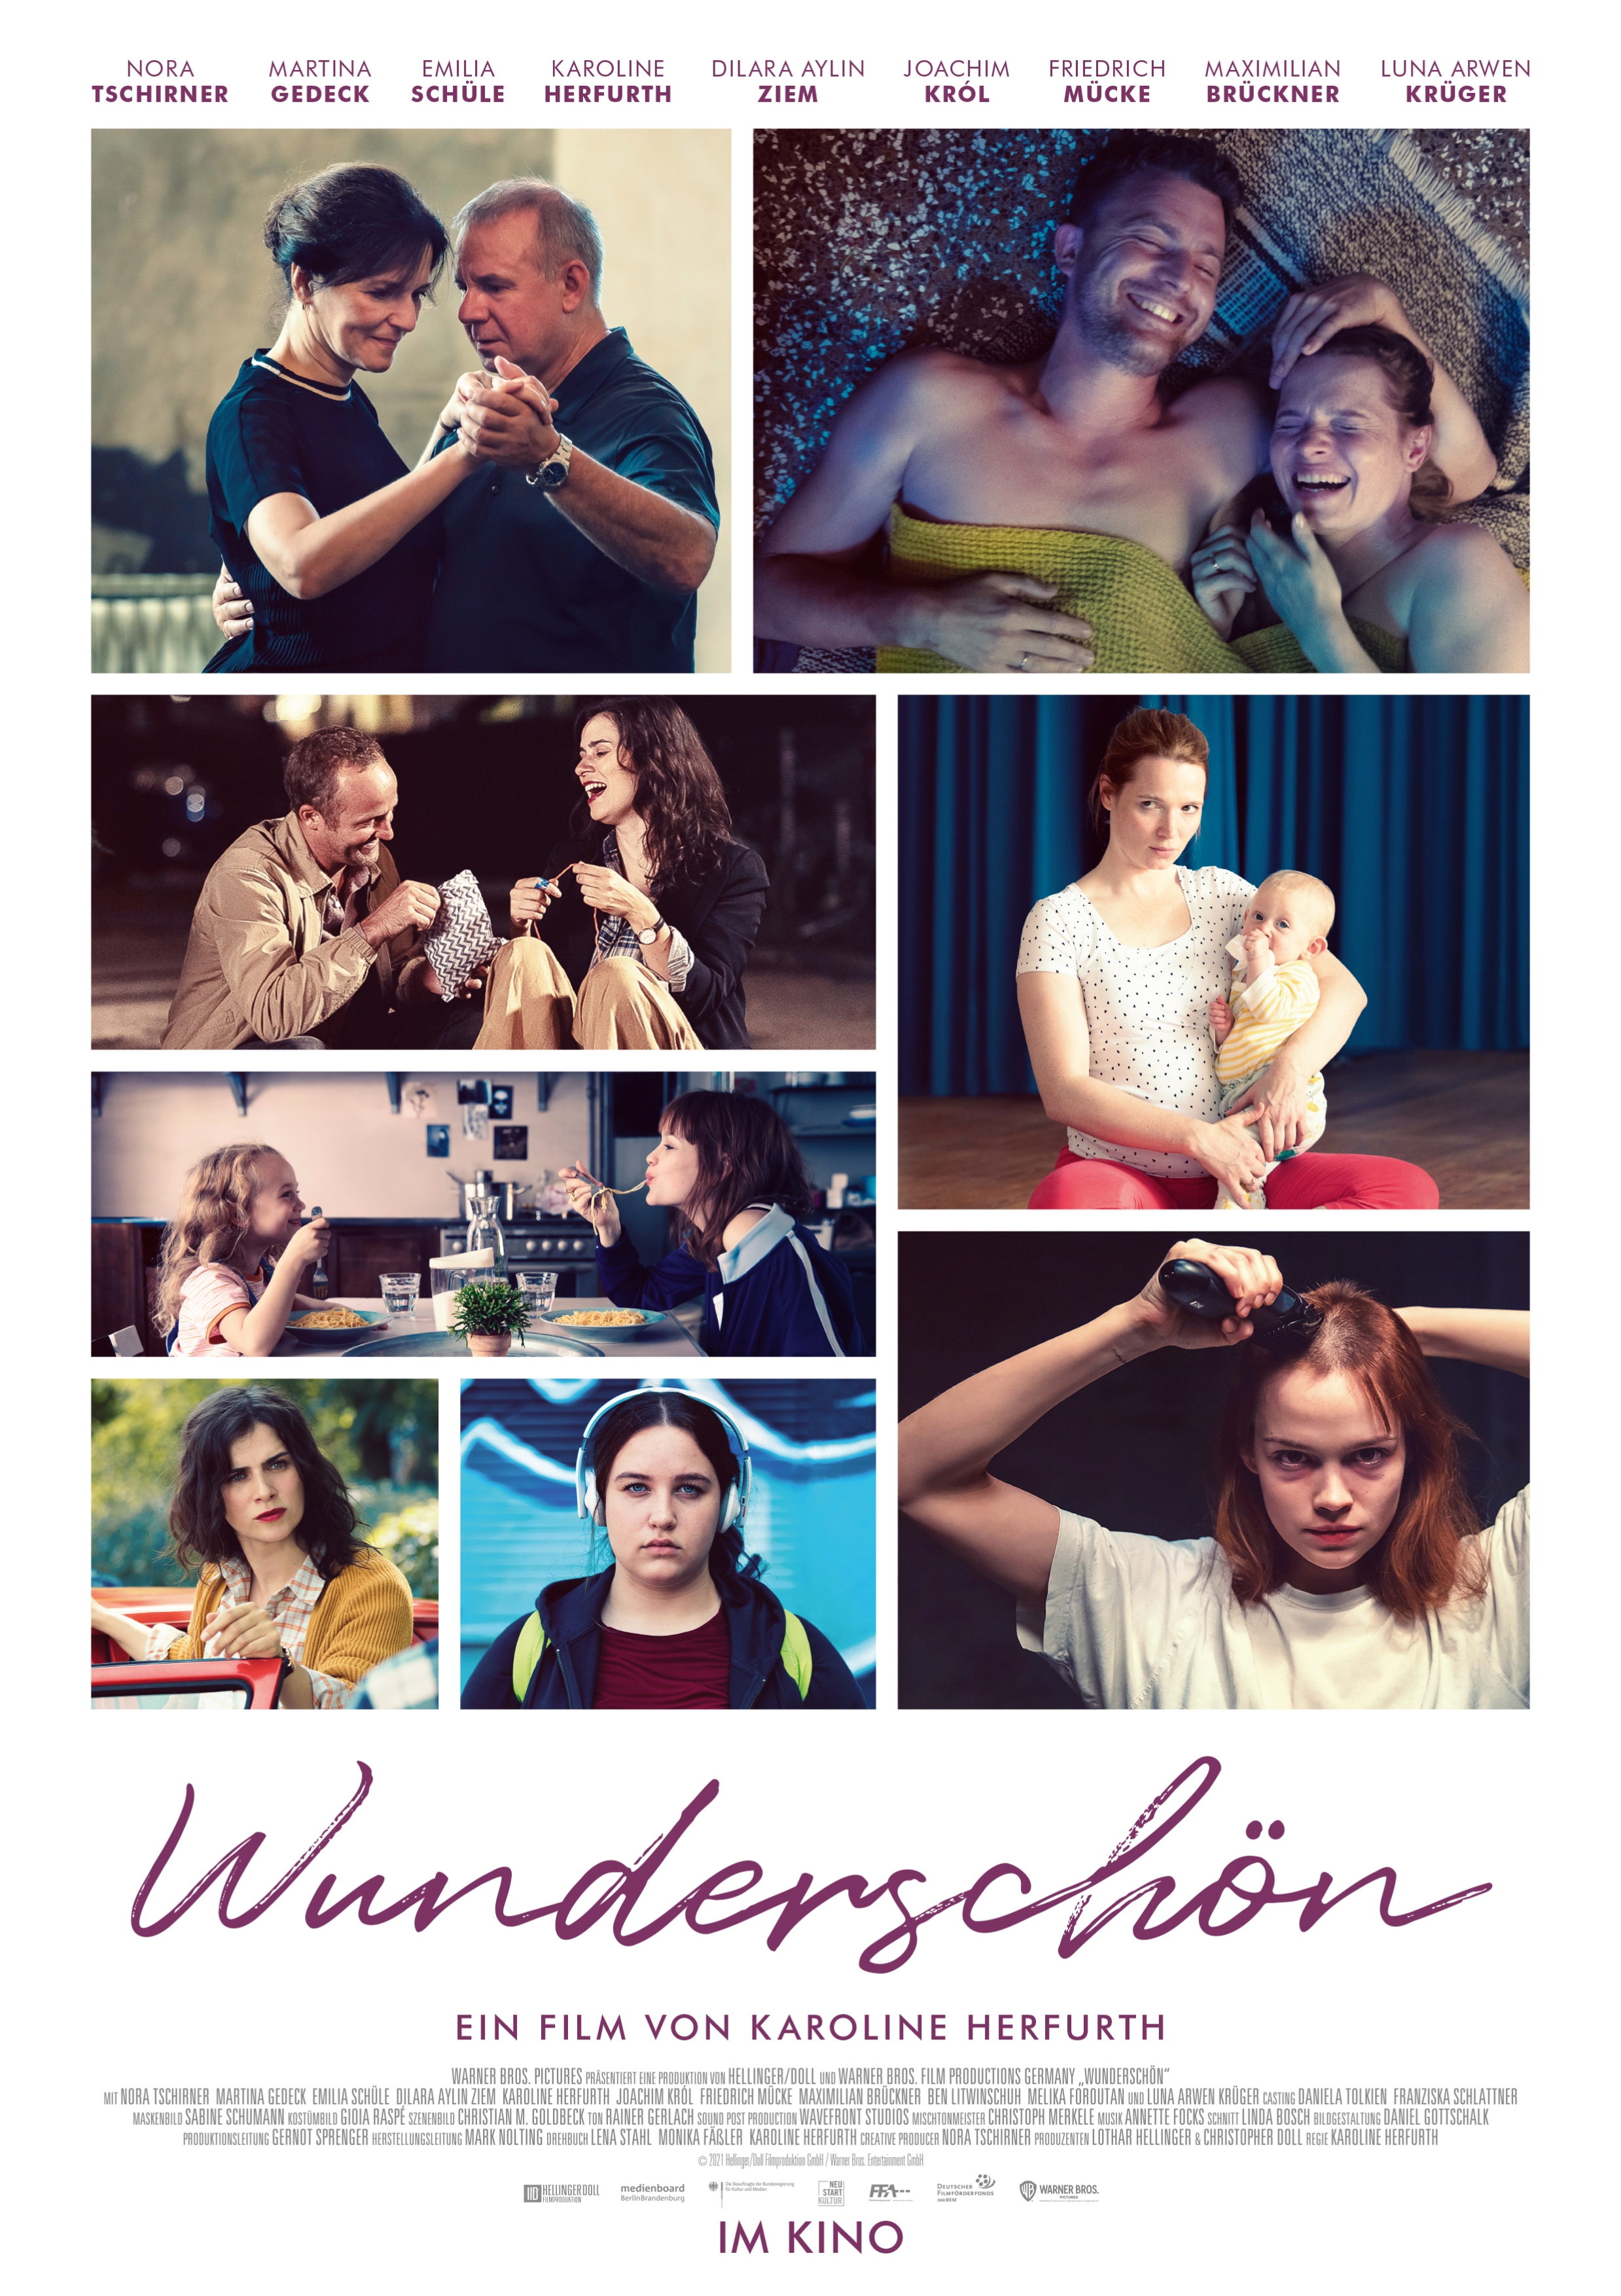 W-film Distribution